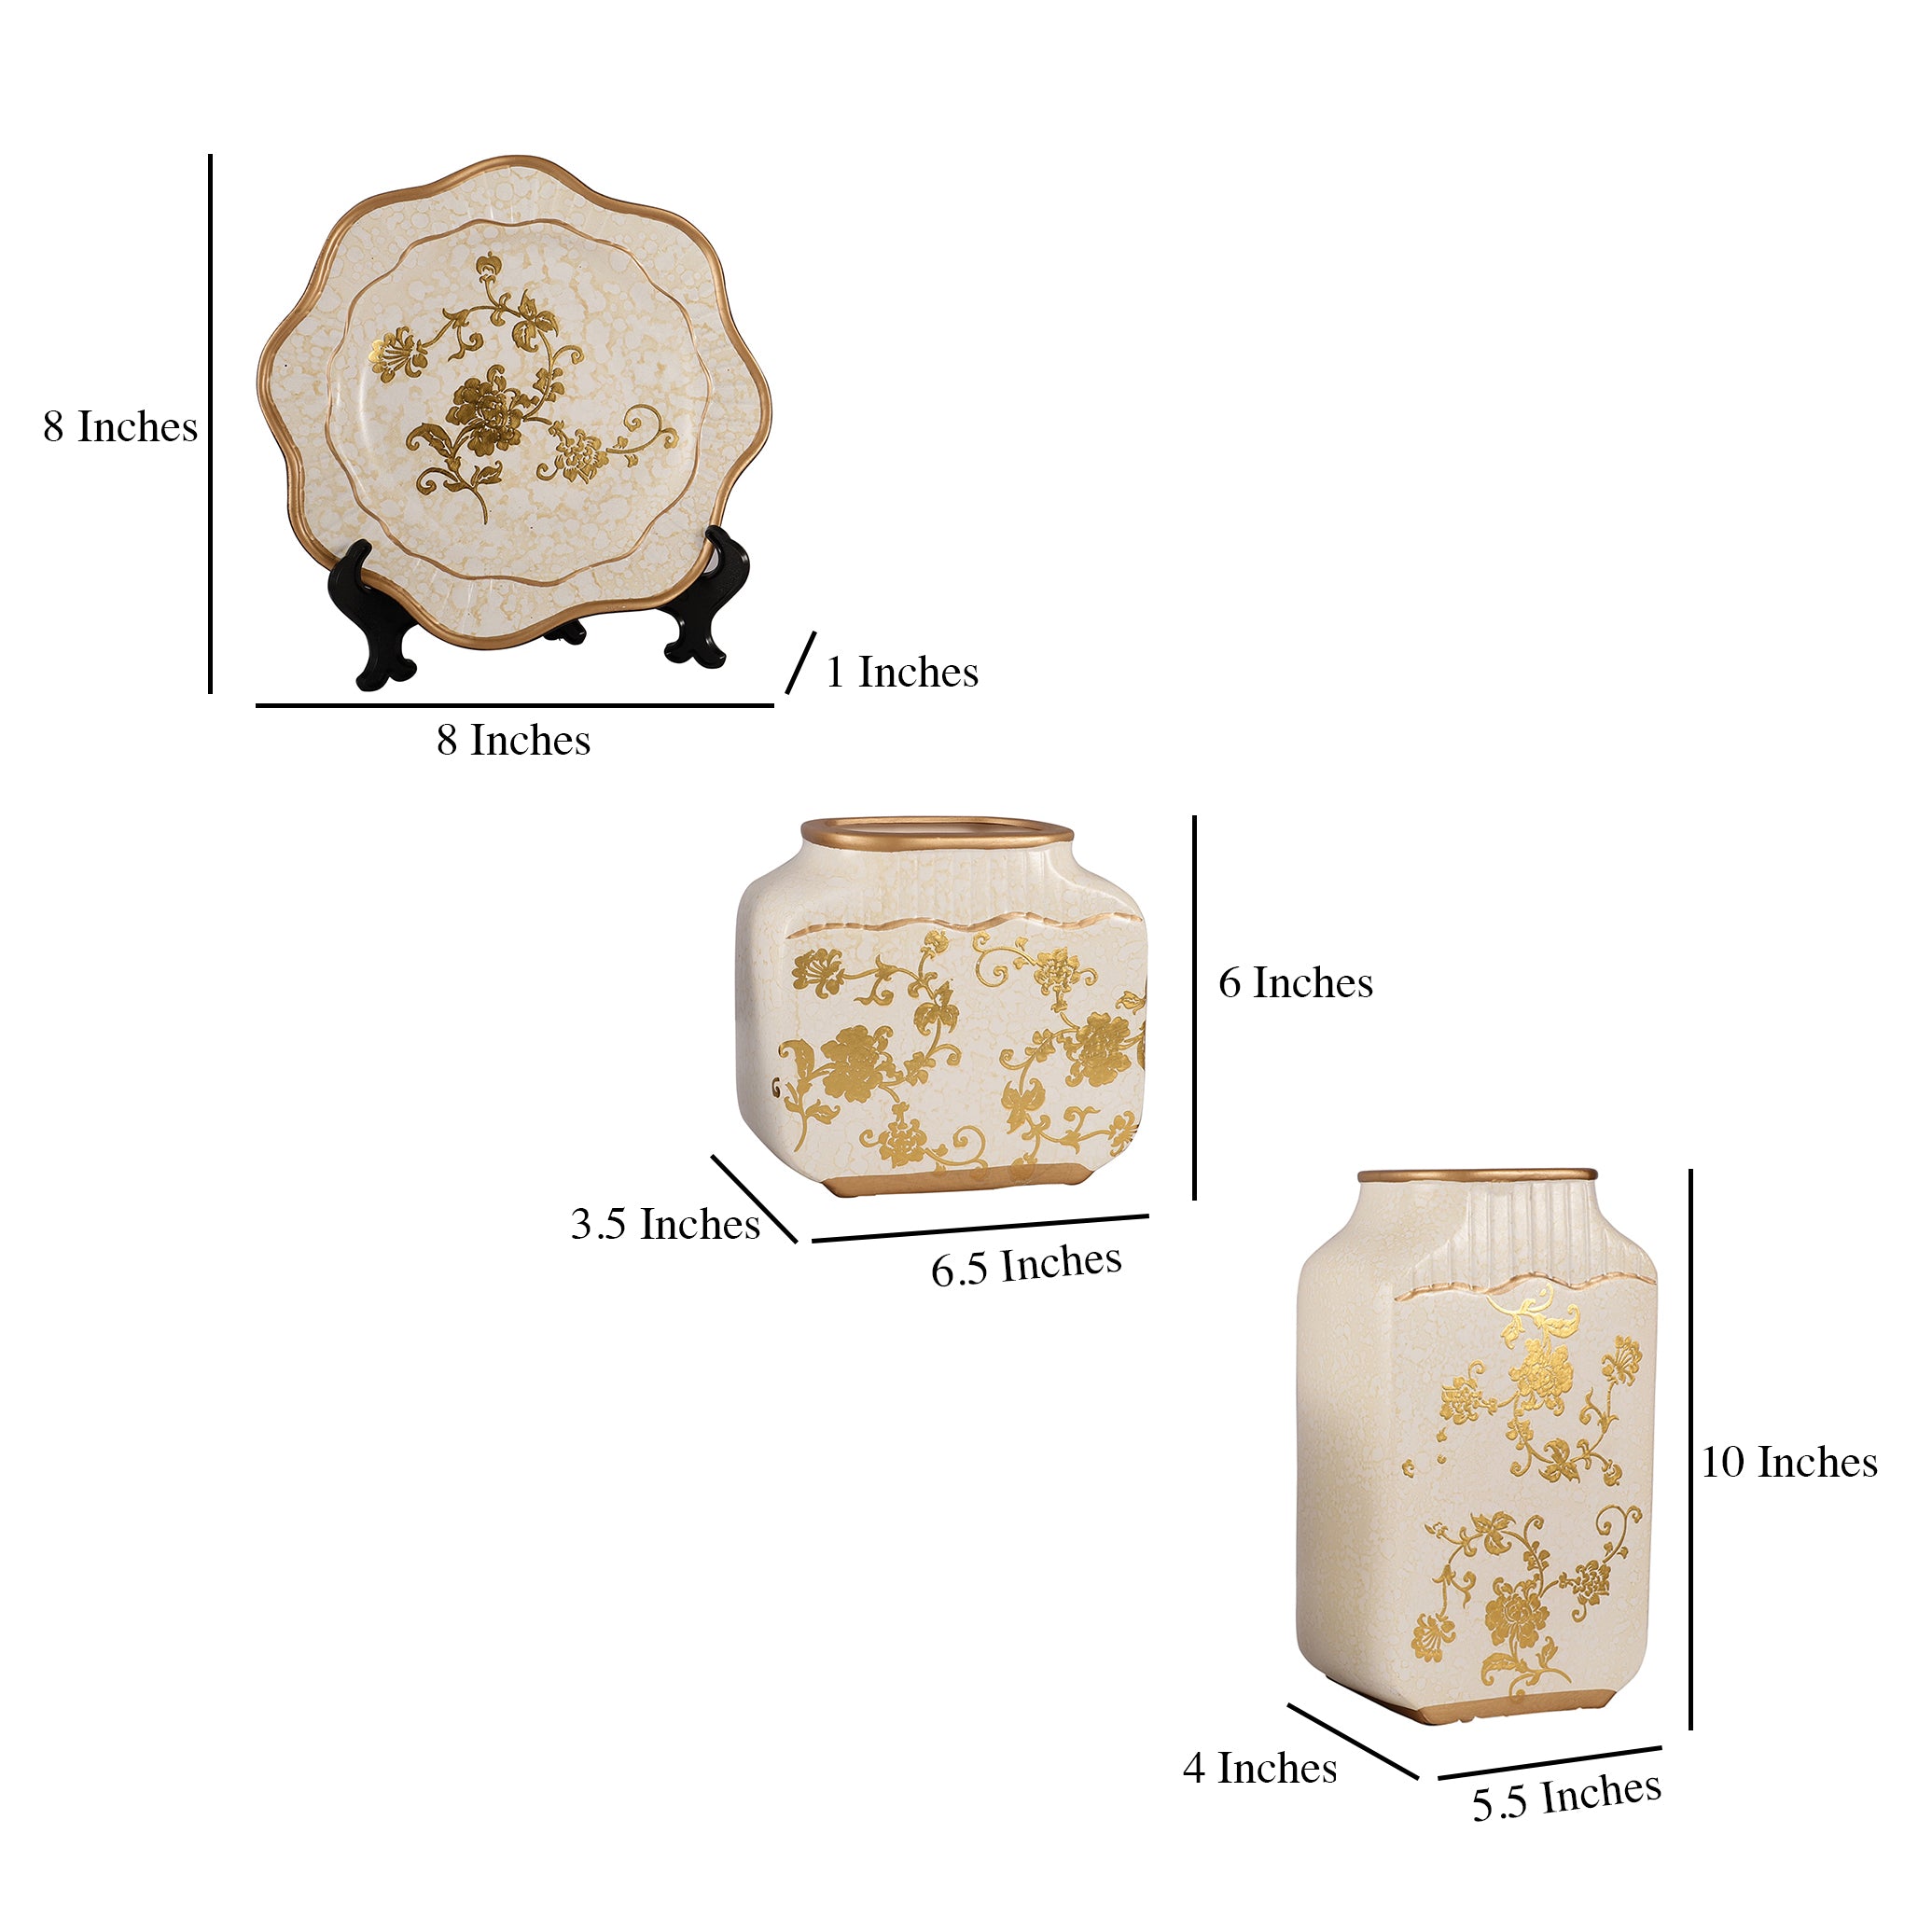 White Regal Gold Floral Pattern Ceramic Vase Set (Set of 3)